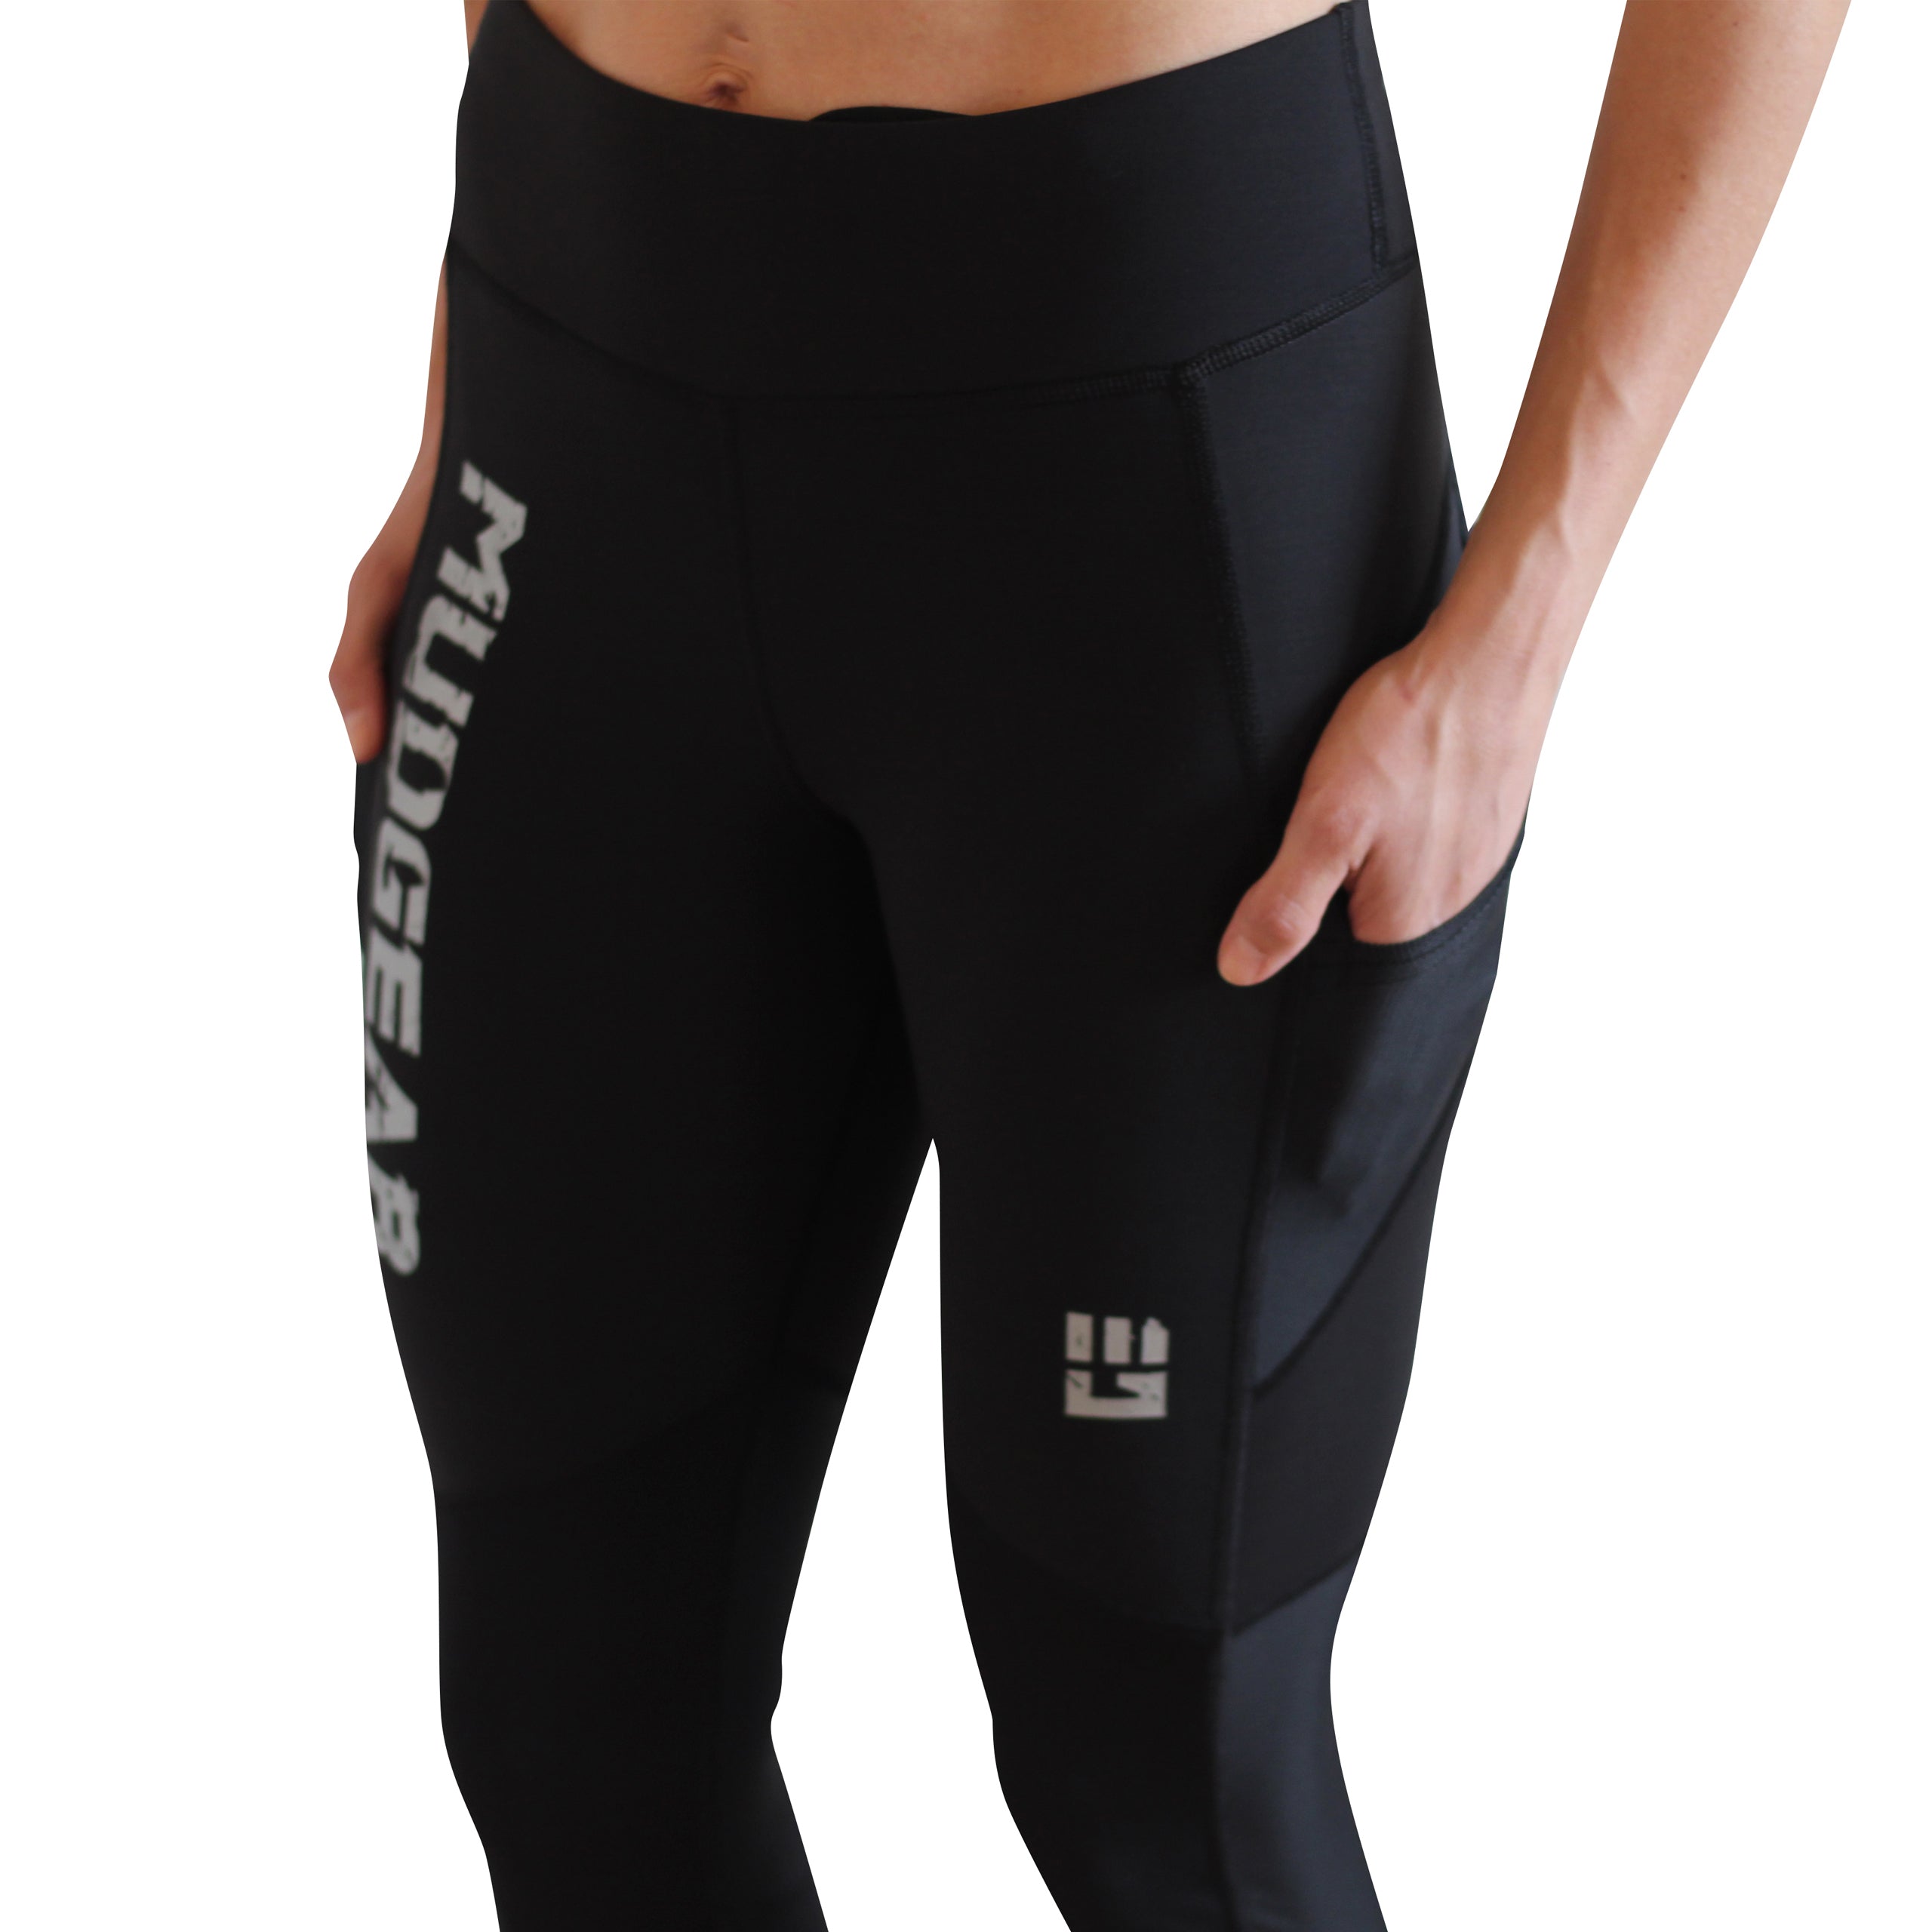 Women's Flex-Fit Compression Shorts 6-inch Inseam – MudGear